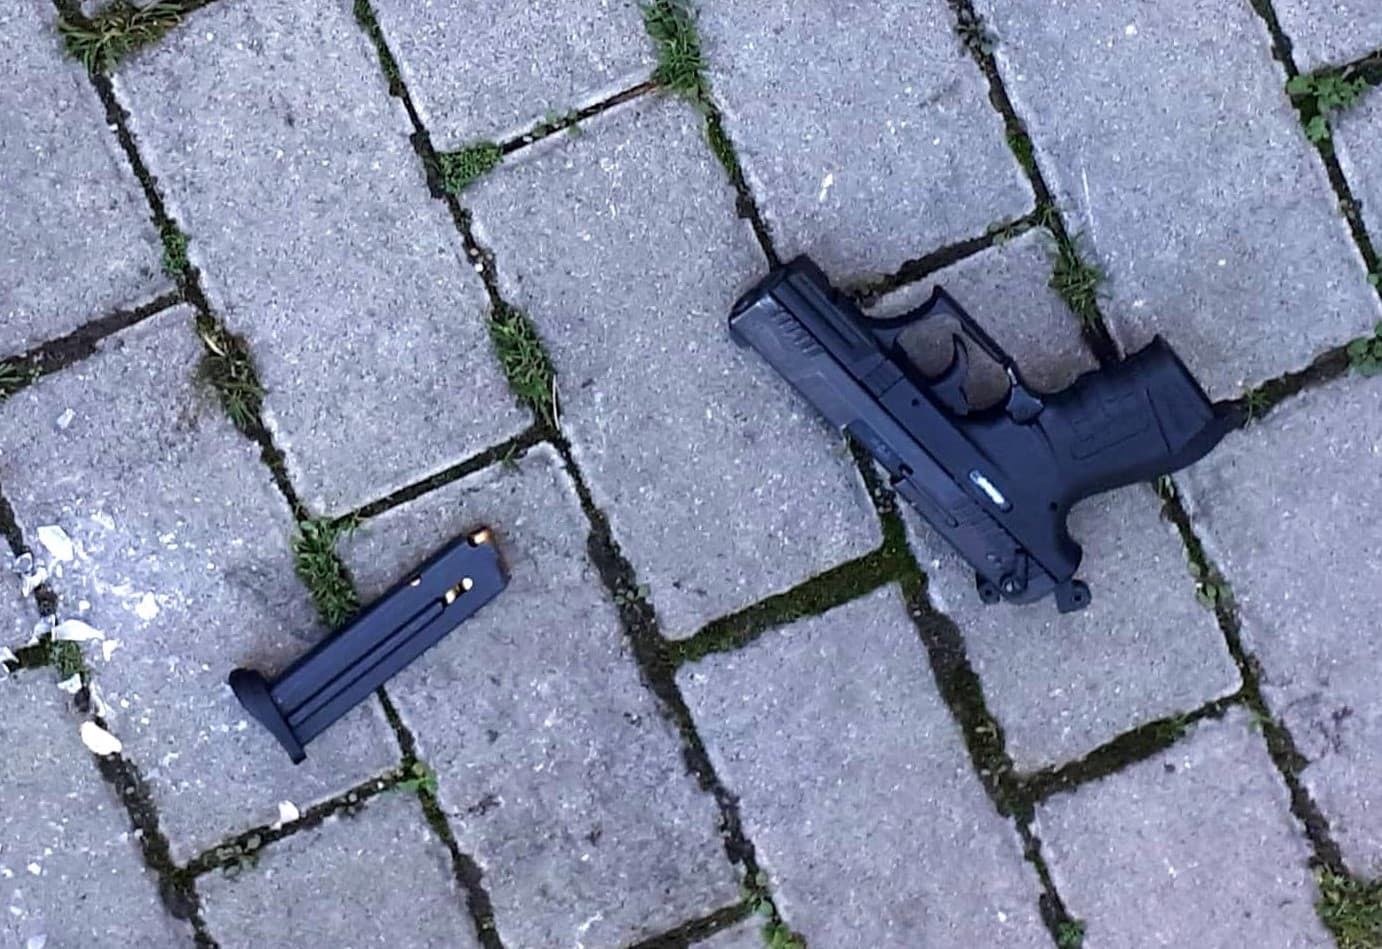 Lövöldözés Pozsonyban: Bújócskát játszott a rendőrökkel a drogos tettes